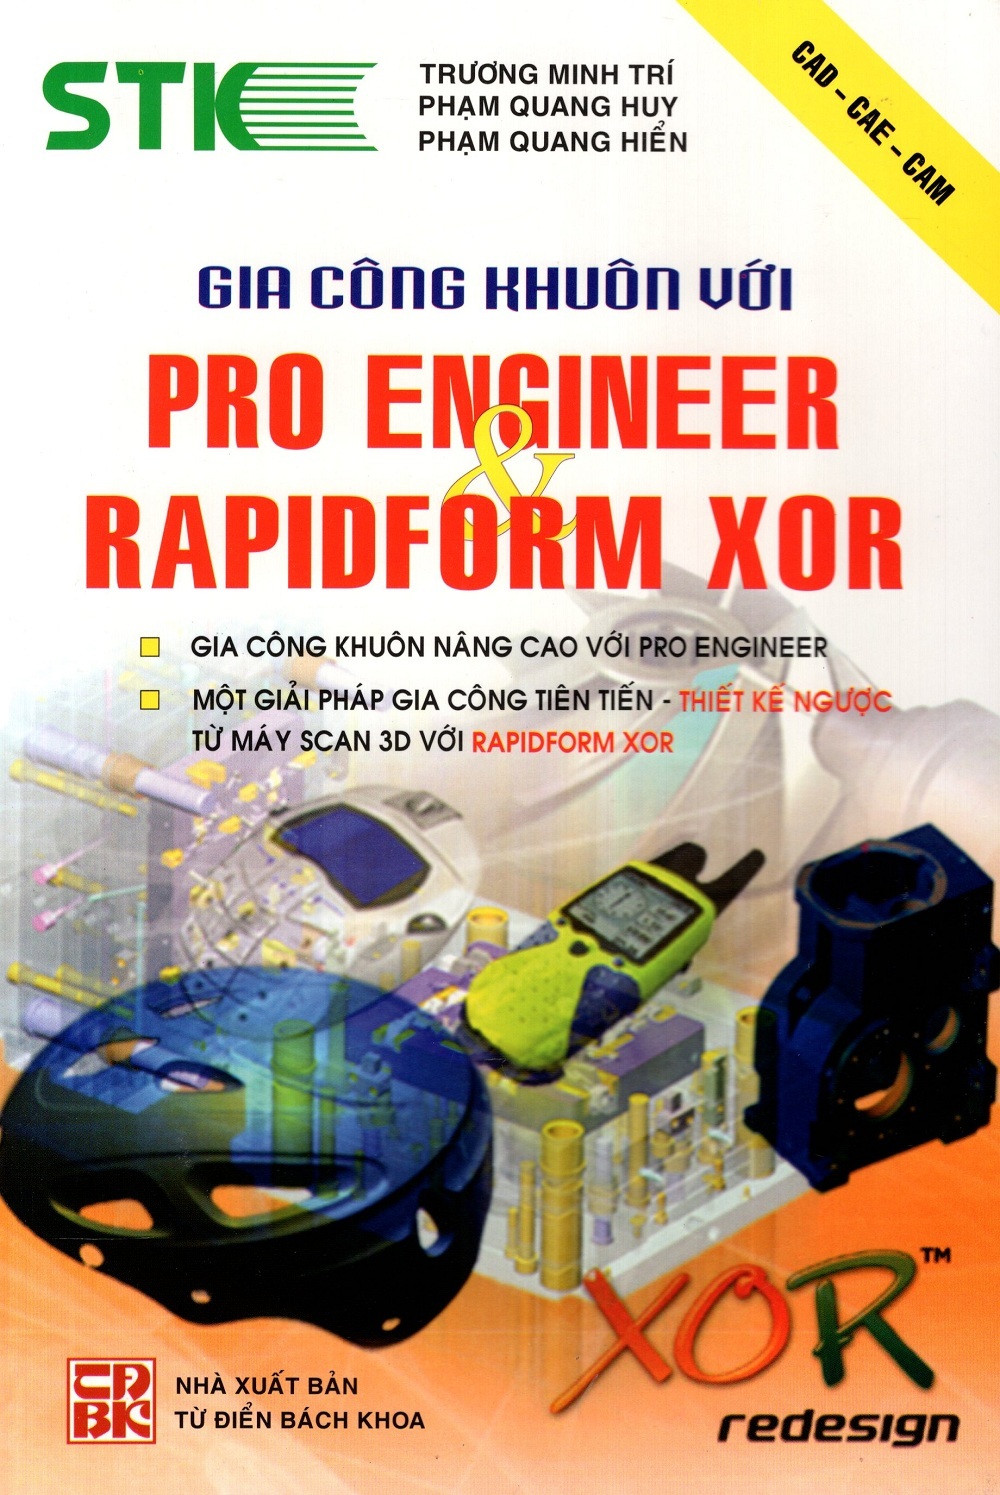 Gia Công Khuôn Với Pro Engineer & Rapidform